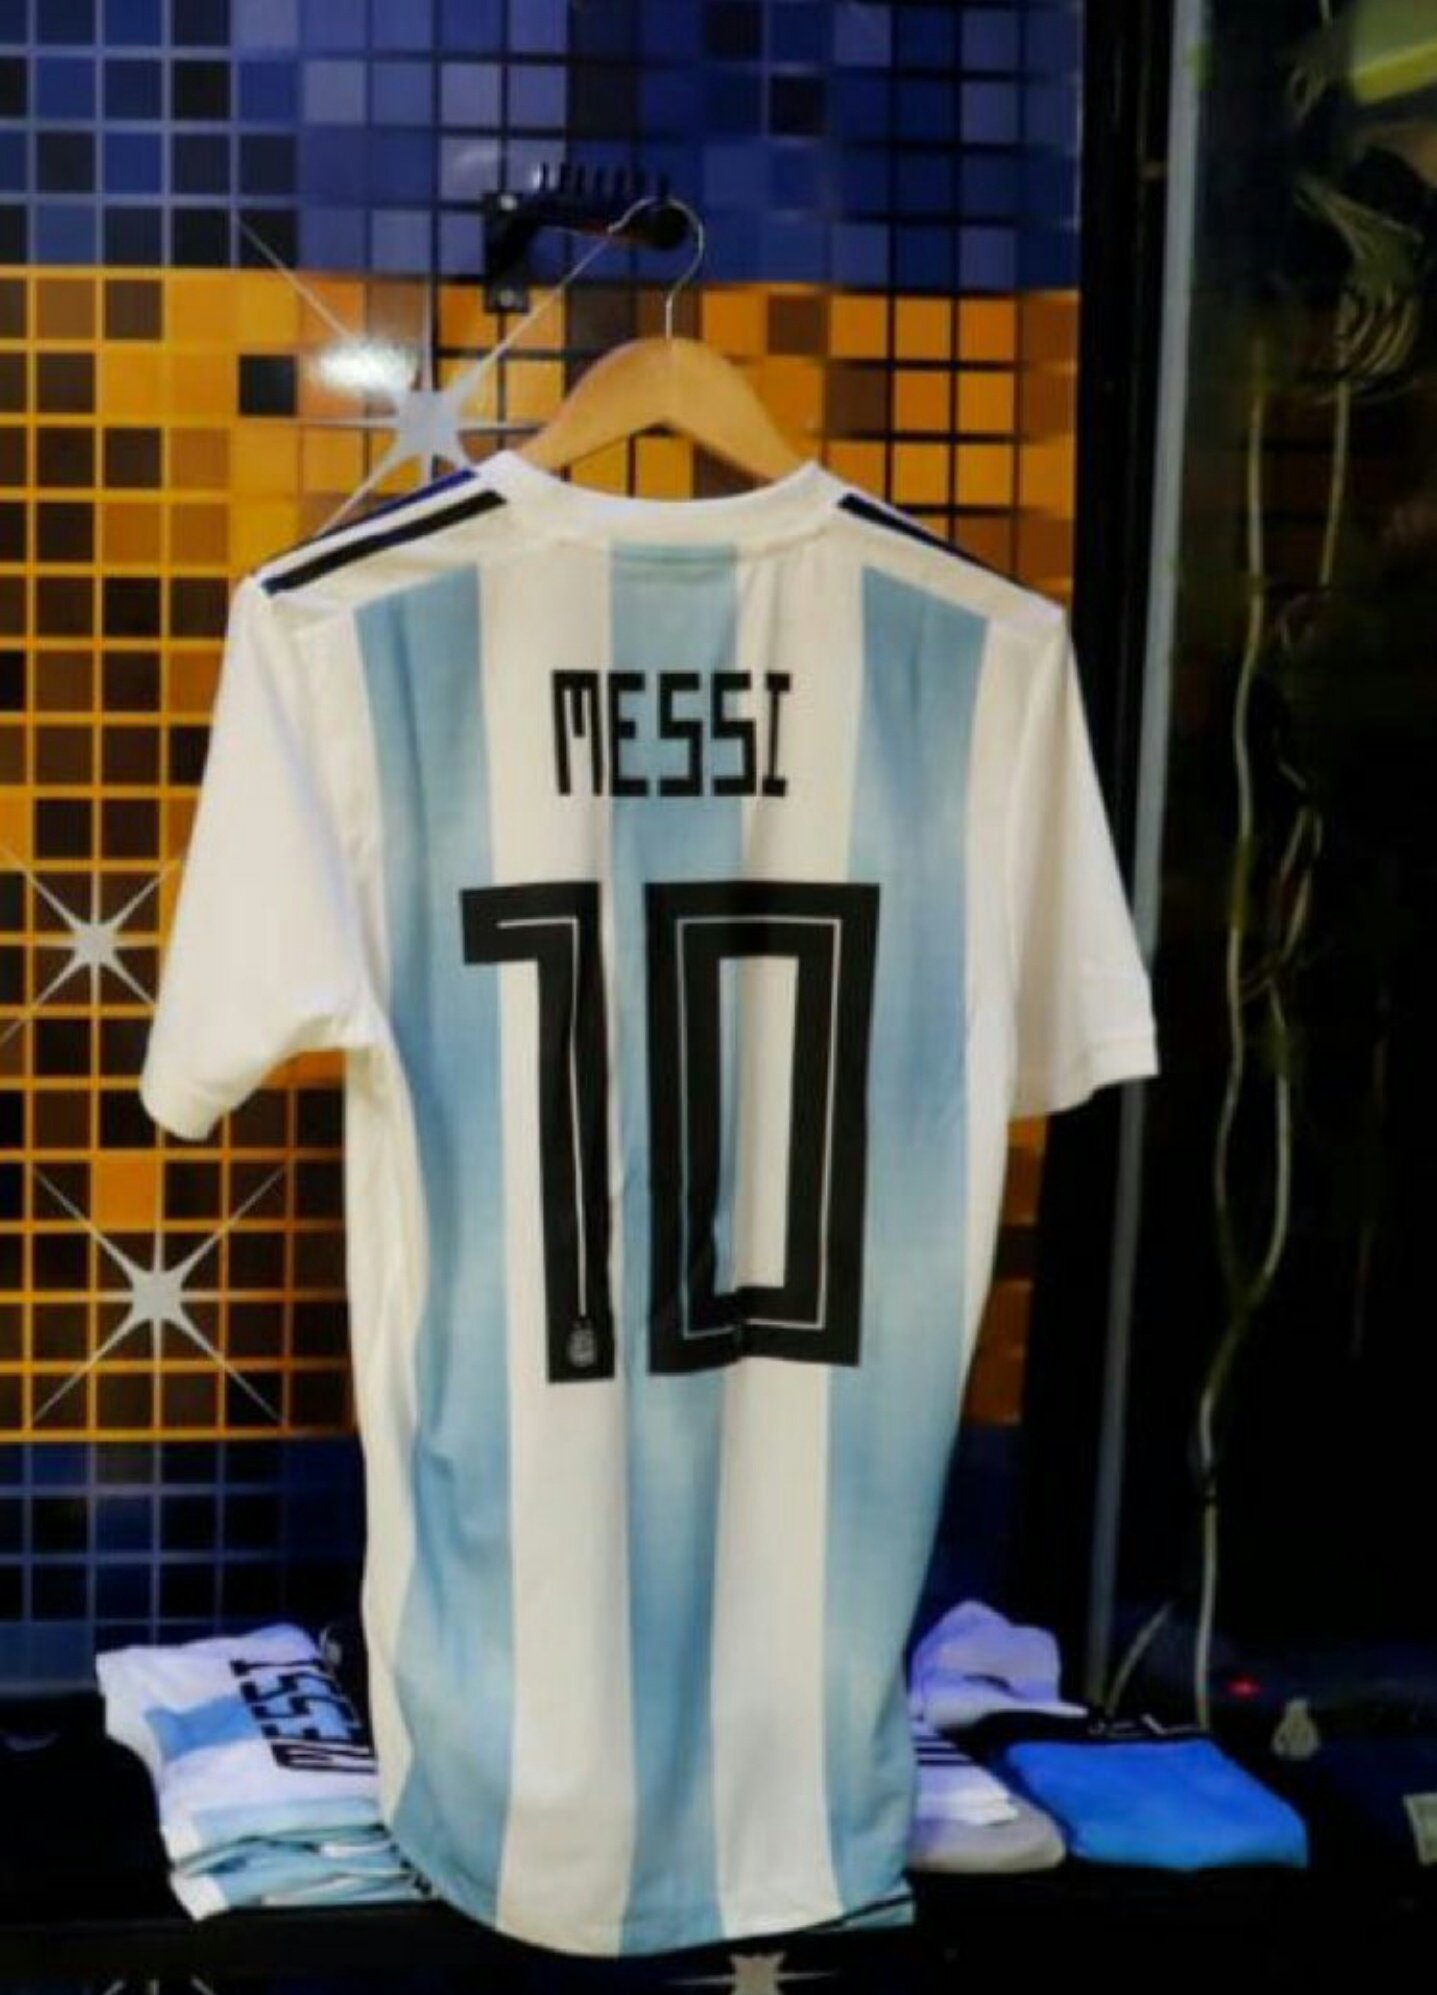 Mancuer on Twitter: "Leo Messi ha estas fotos en sus redes sociales. La camiseta y las botas del 10 de Argentina están listas para el mundial. https://t.co/bN8wKZiGmk" / Twitter